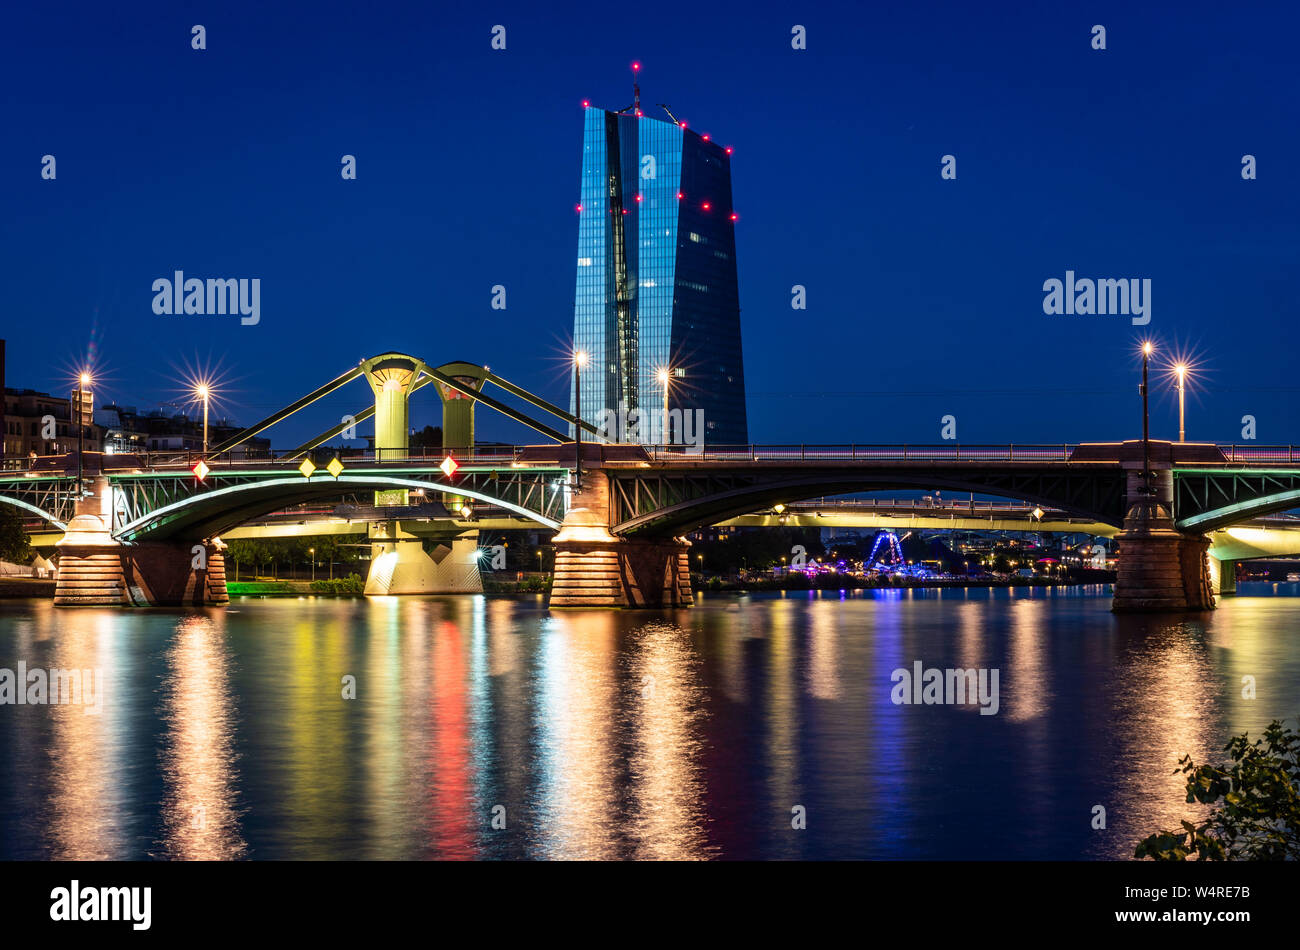 23 luglio 2019, Assia, Frankfurt/Main: la sede della Banca centrale europea (BCE) ad est di Francoforte dietro il illuminato ponti principale in tarda serata. Foto: Frank Rumpenhorst/dpa Foto Stock